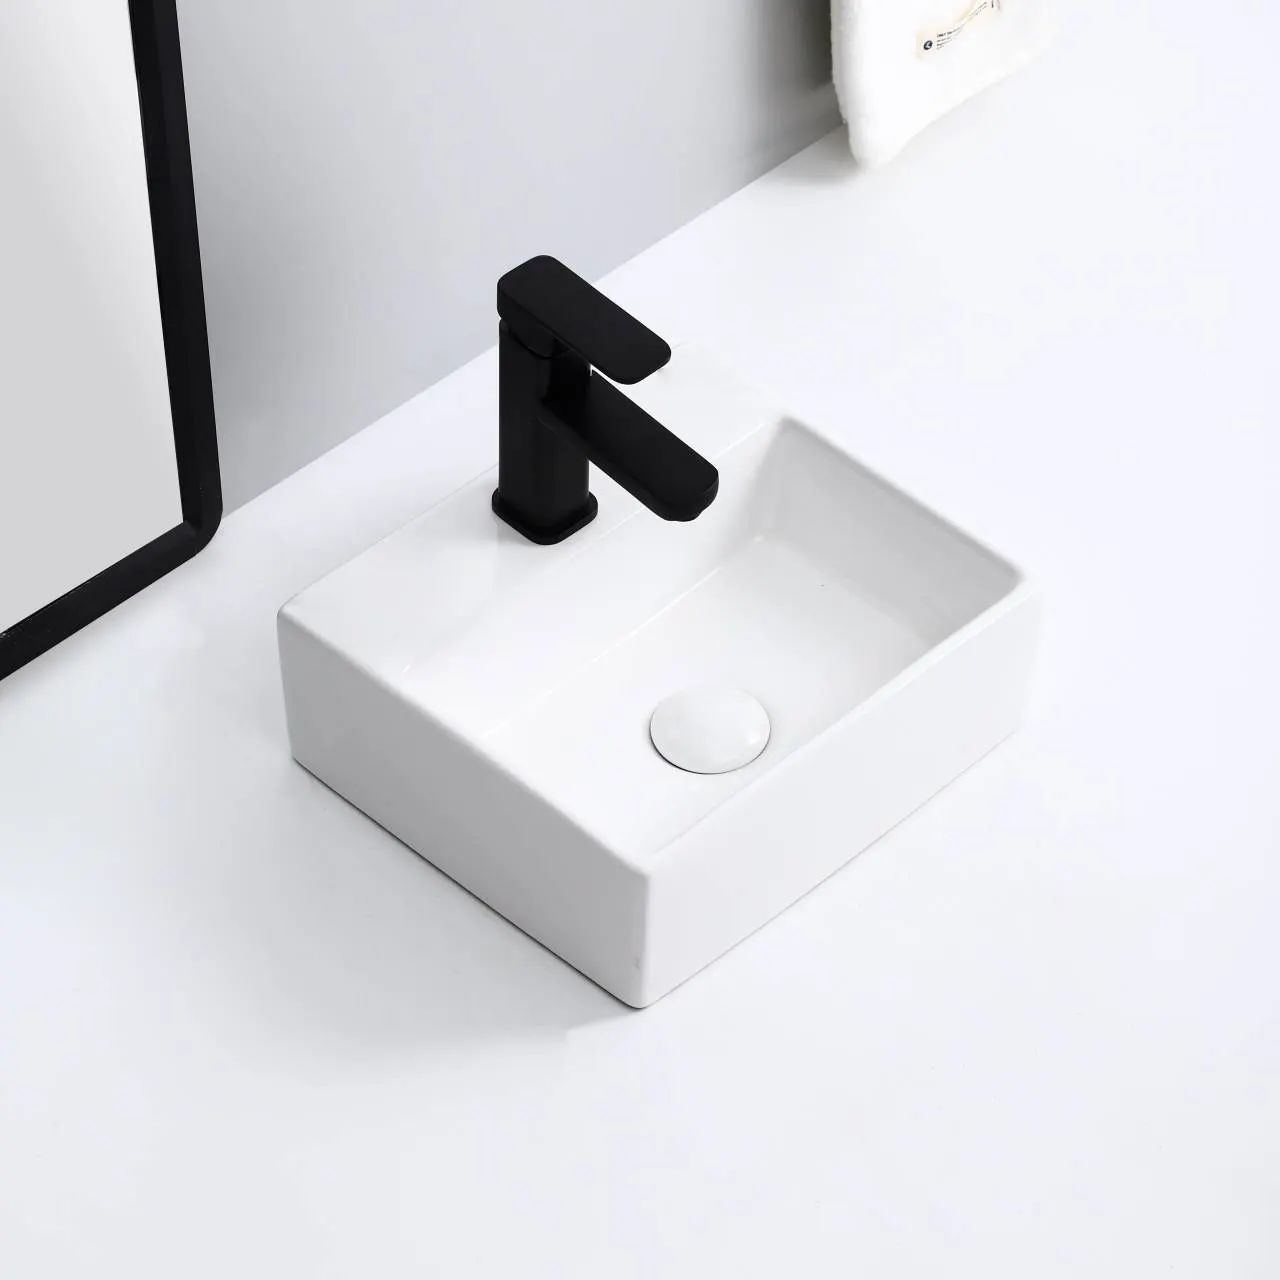 Hot selling modern floor standing ceramic pedestal wash basin pedestal sink